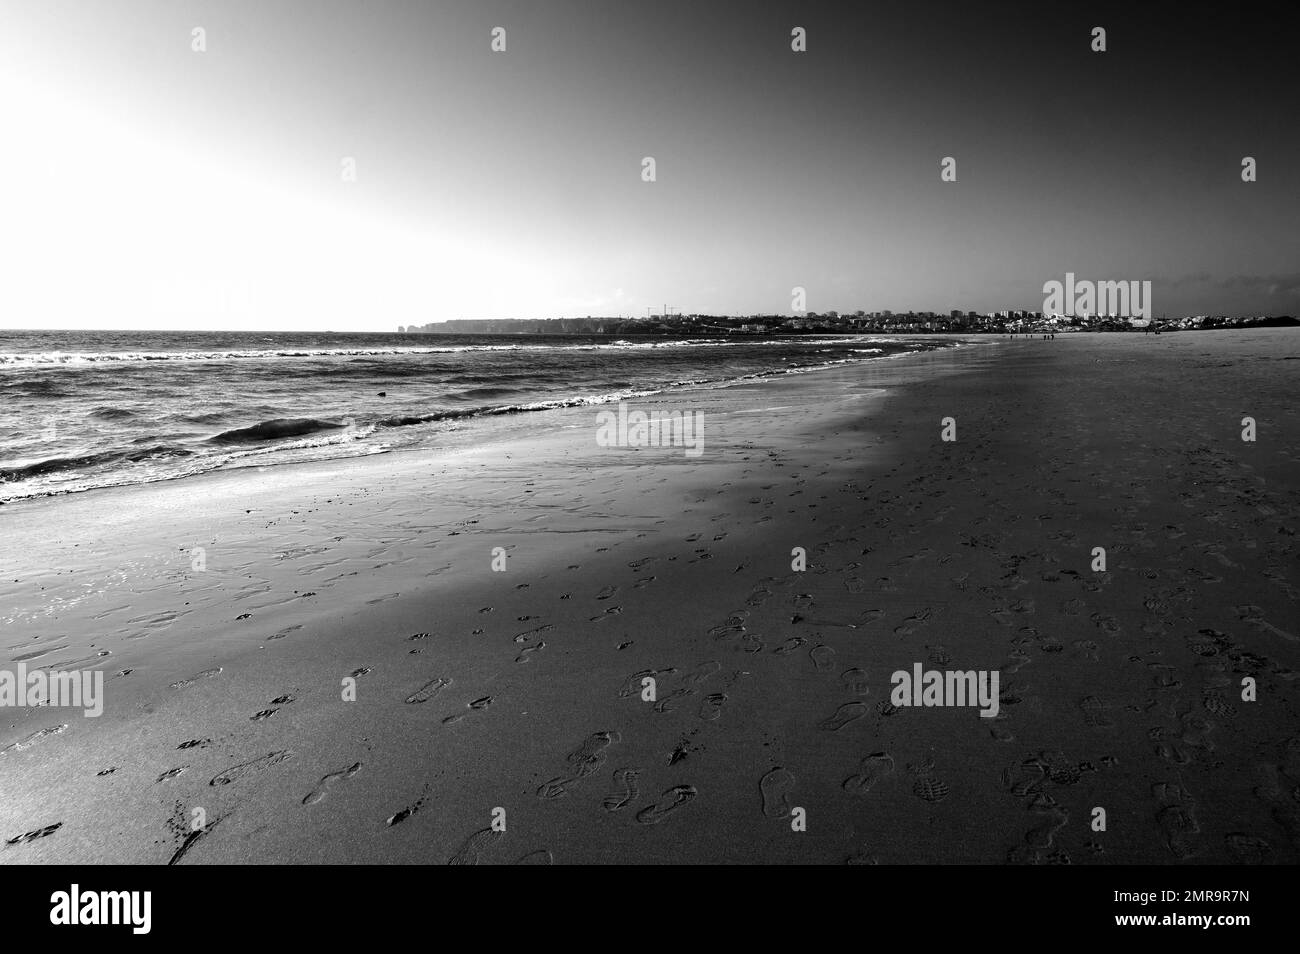 Una spiaggia di sabbia deserta e uno skyline della città in lontananza Foto Stock